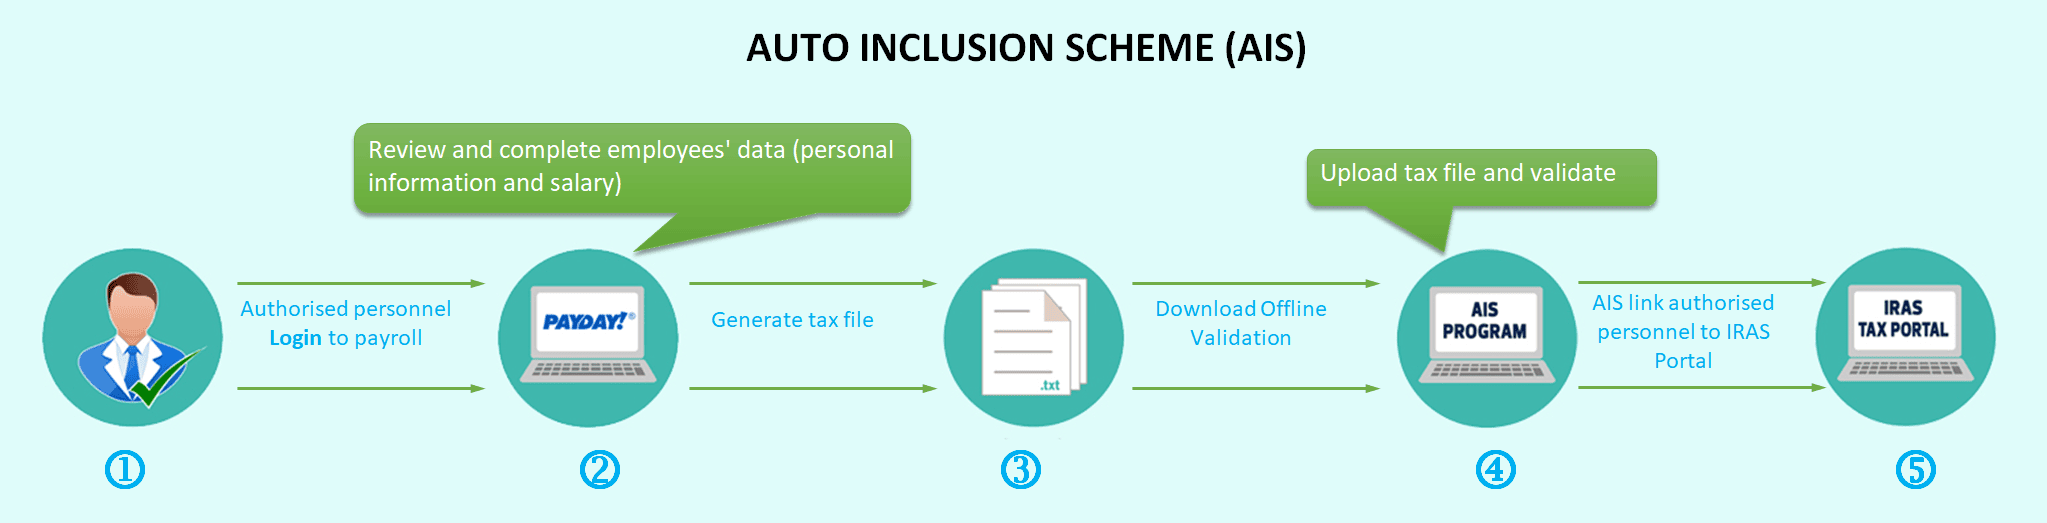 Auto Inclusion Scheme (AIS)